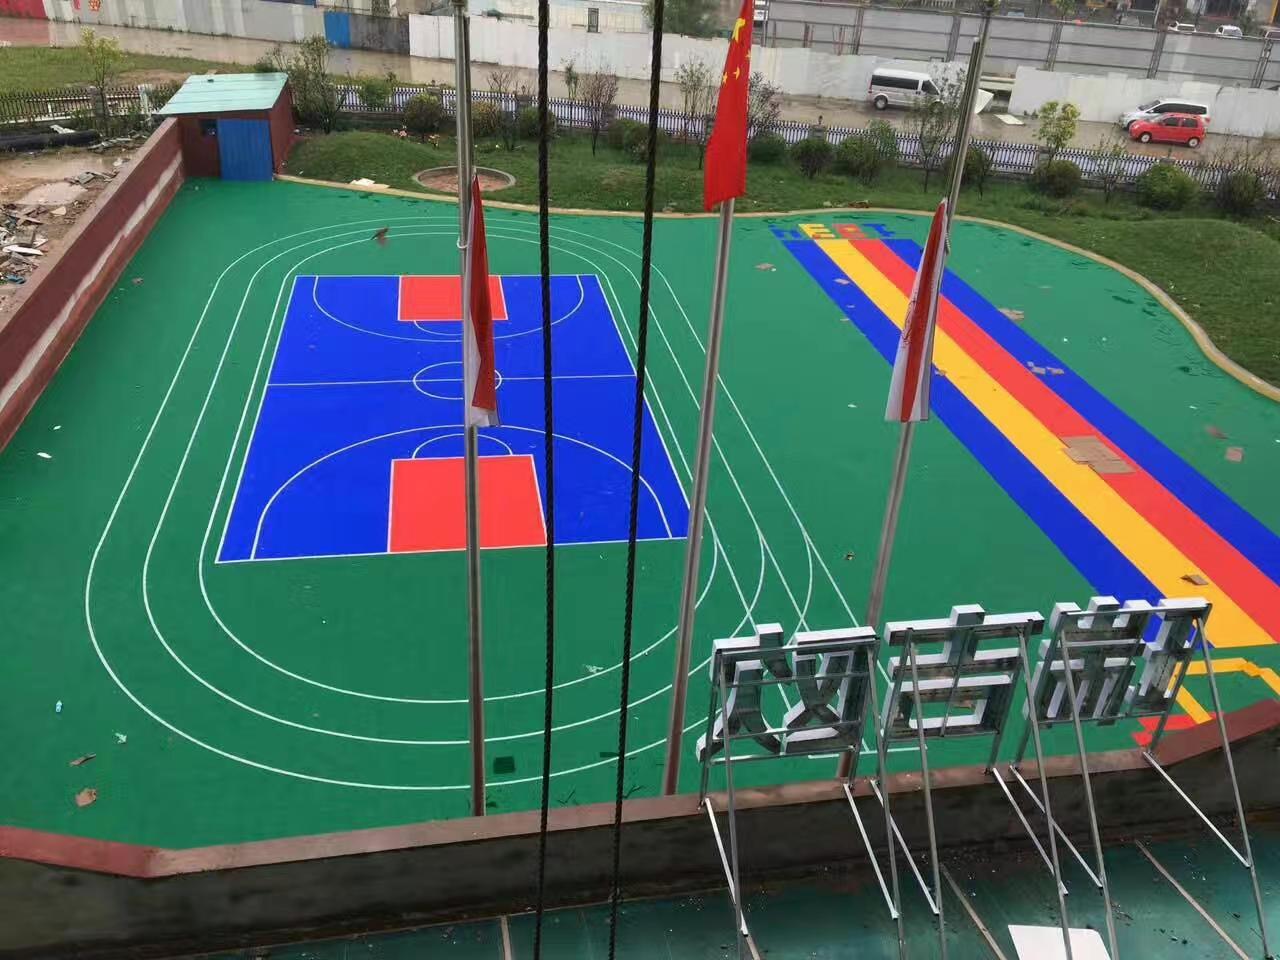 标速厂家供应篮球场悬浮地板 幼儿园悬浮地垫   学校操场悬浮地板  带弹垫悬浮地板   塑料拼装地板示例图2